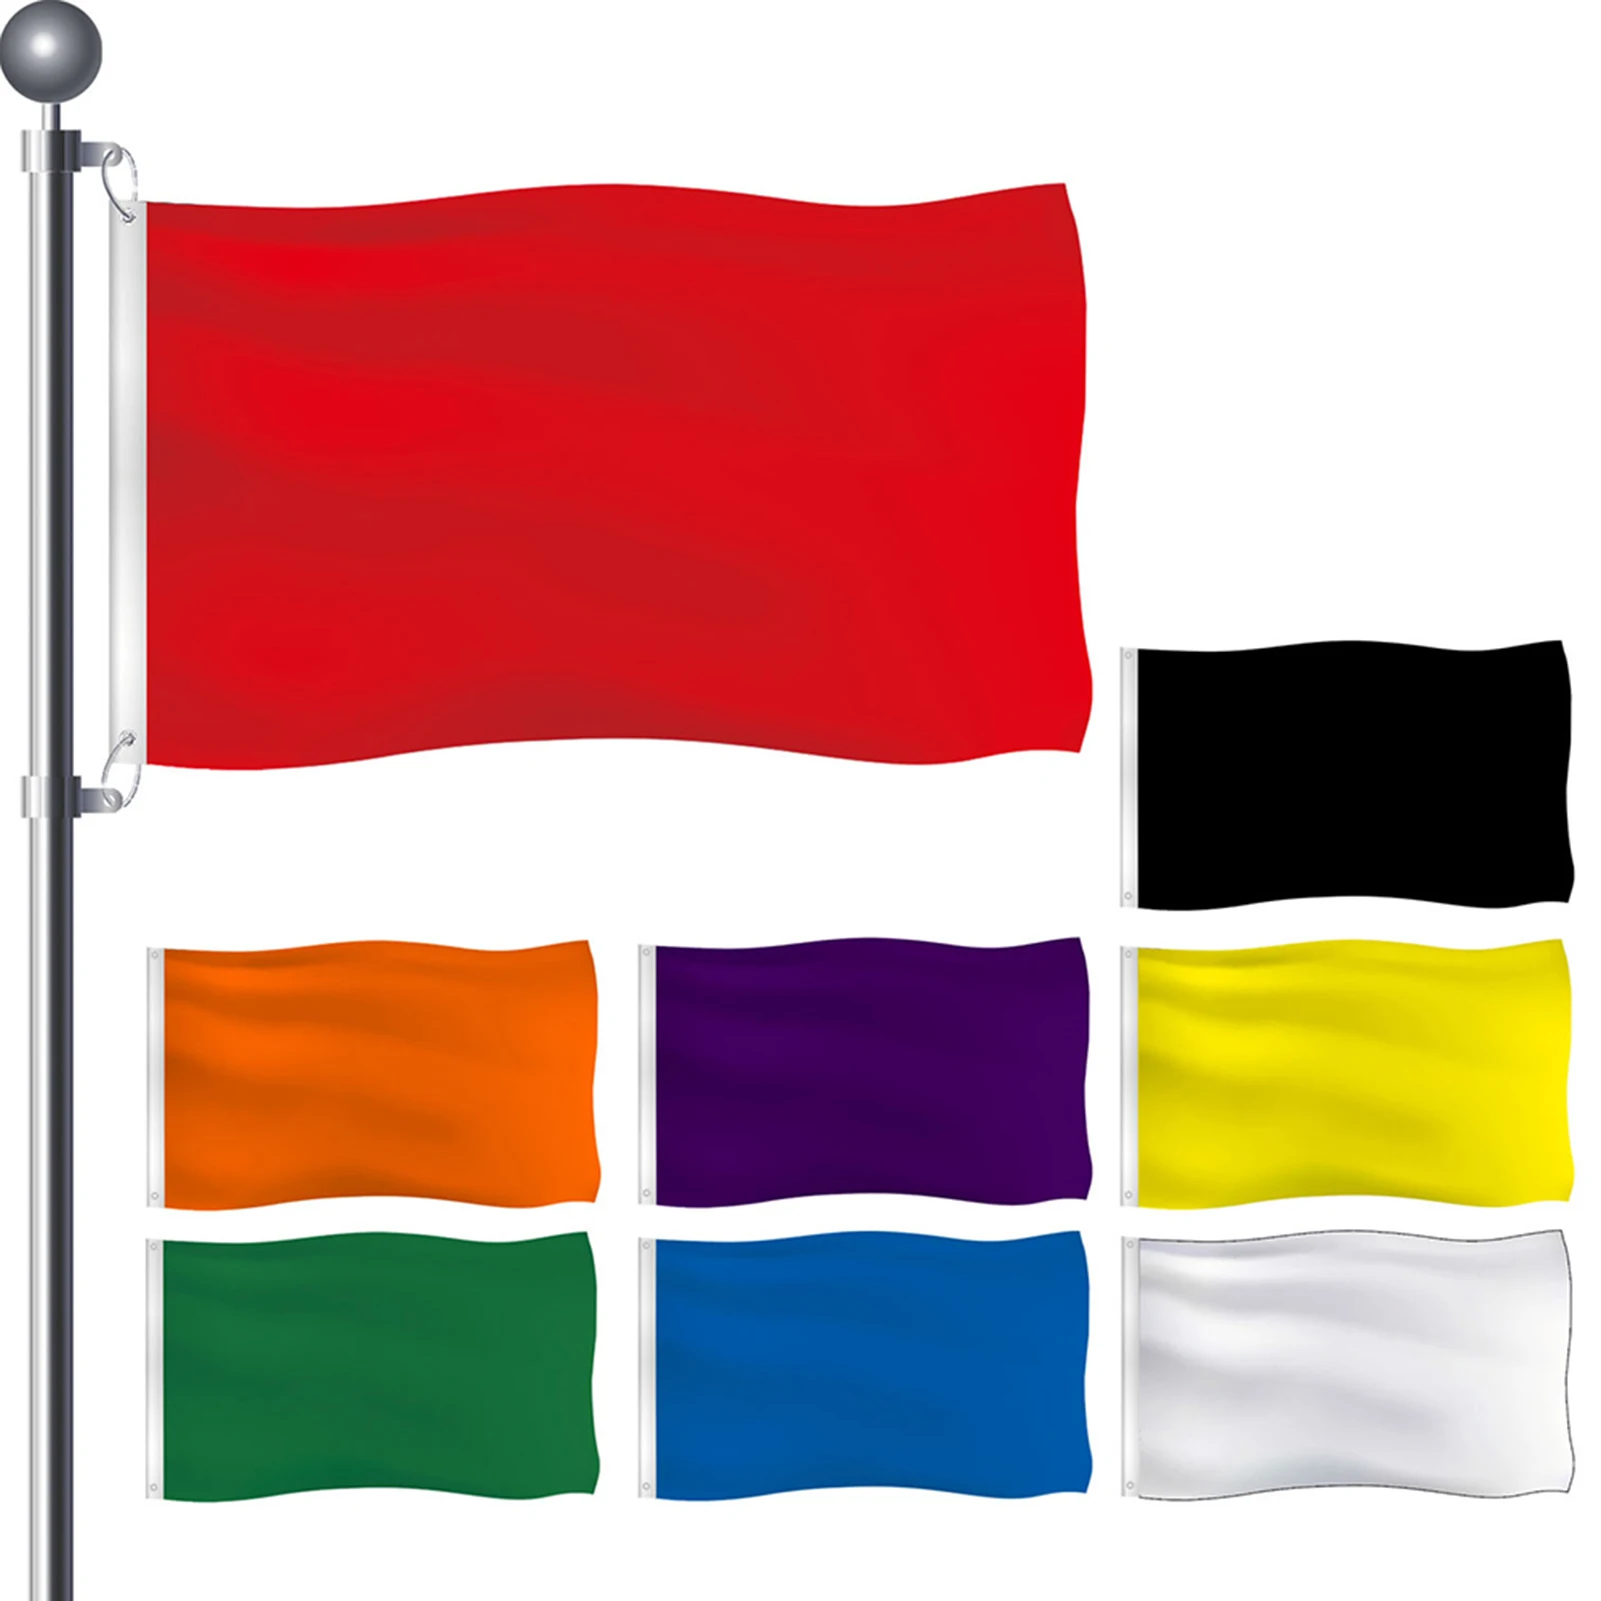 Флаг из полиэфирной ткани яркого цвета, защищающий от выцветания, обработанный для защиты от выцветания